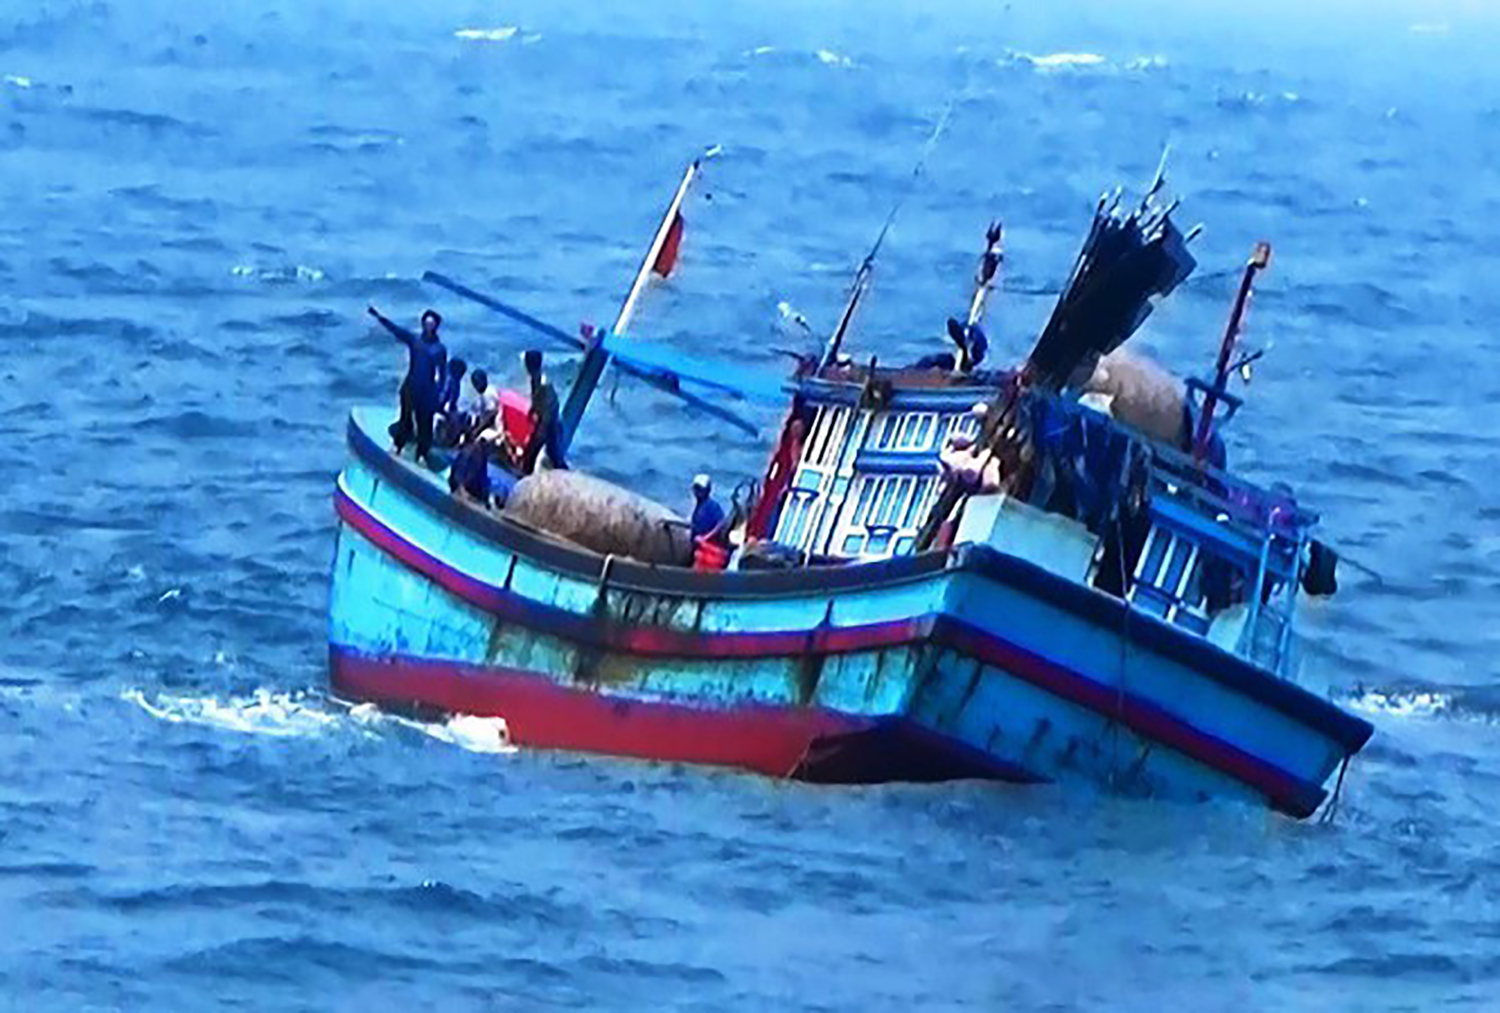 Tàu cá bị chìm 2 ngư dân mất tích trên biển ở Bình Định - Ảnh 1.